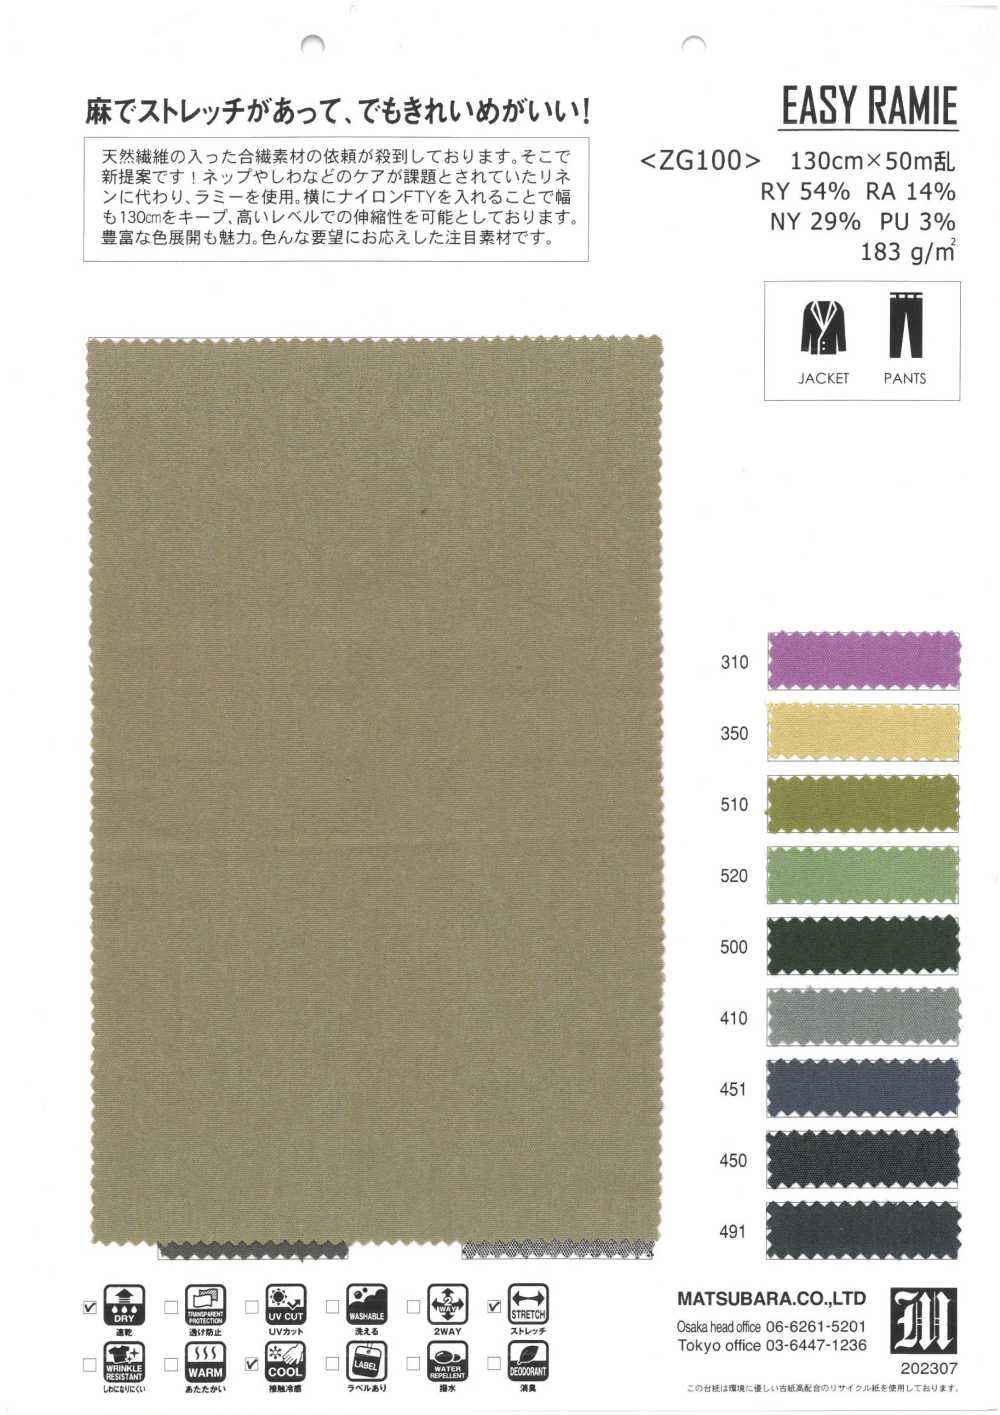 ZG100 EINFACHES RAMIE[Textilgewebe] Matsubara